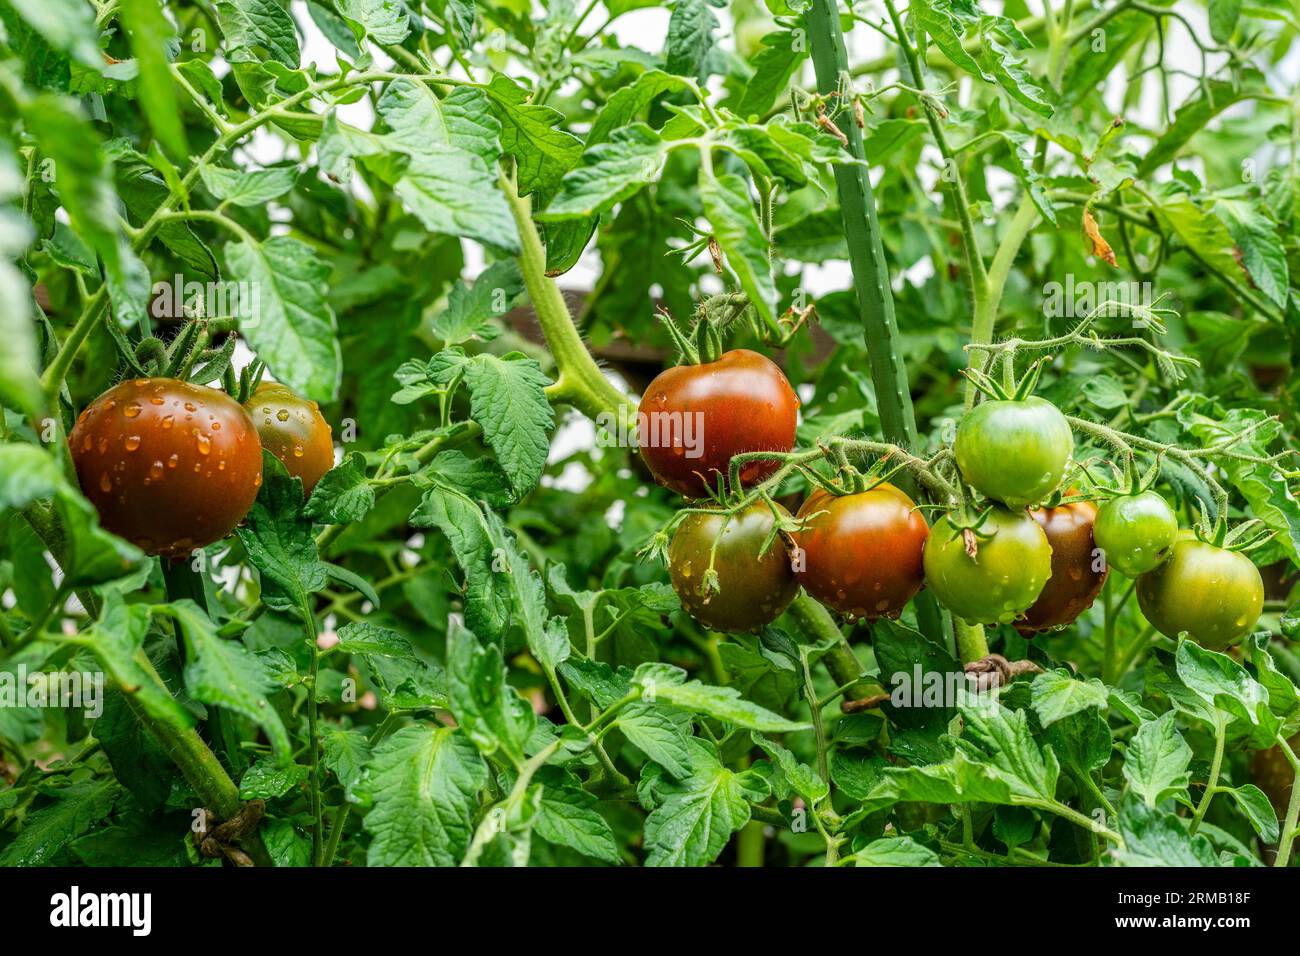 KAKAO F1 POMODORO IBRIDO. I frutti rotondi maturano a marrone scuro con colletto verde. Gocce d'acqua. Foto Stock